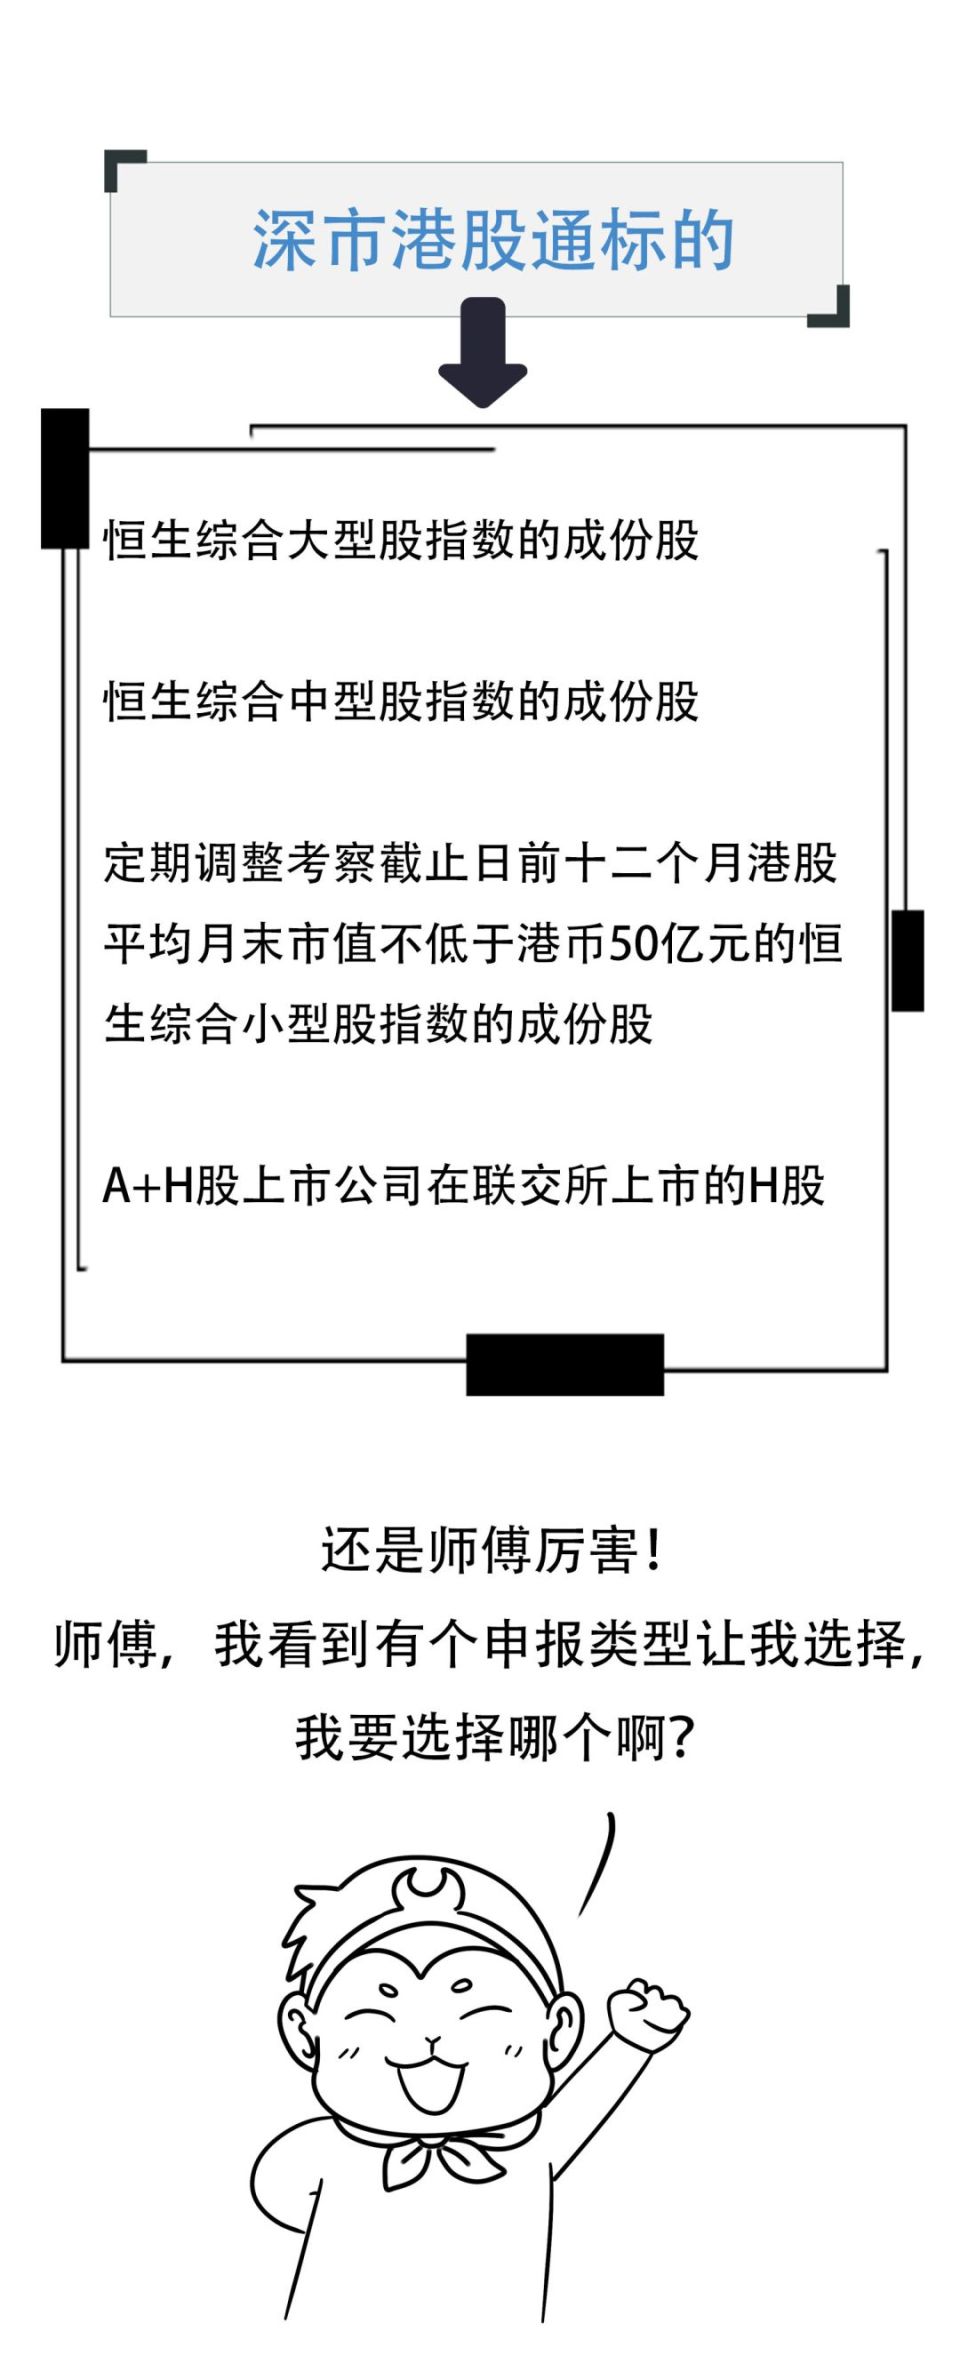 深港通规则指引:如何用A股账户买香港股票